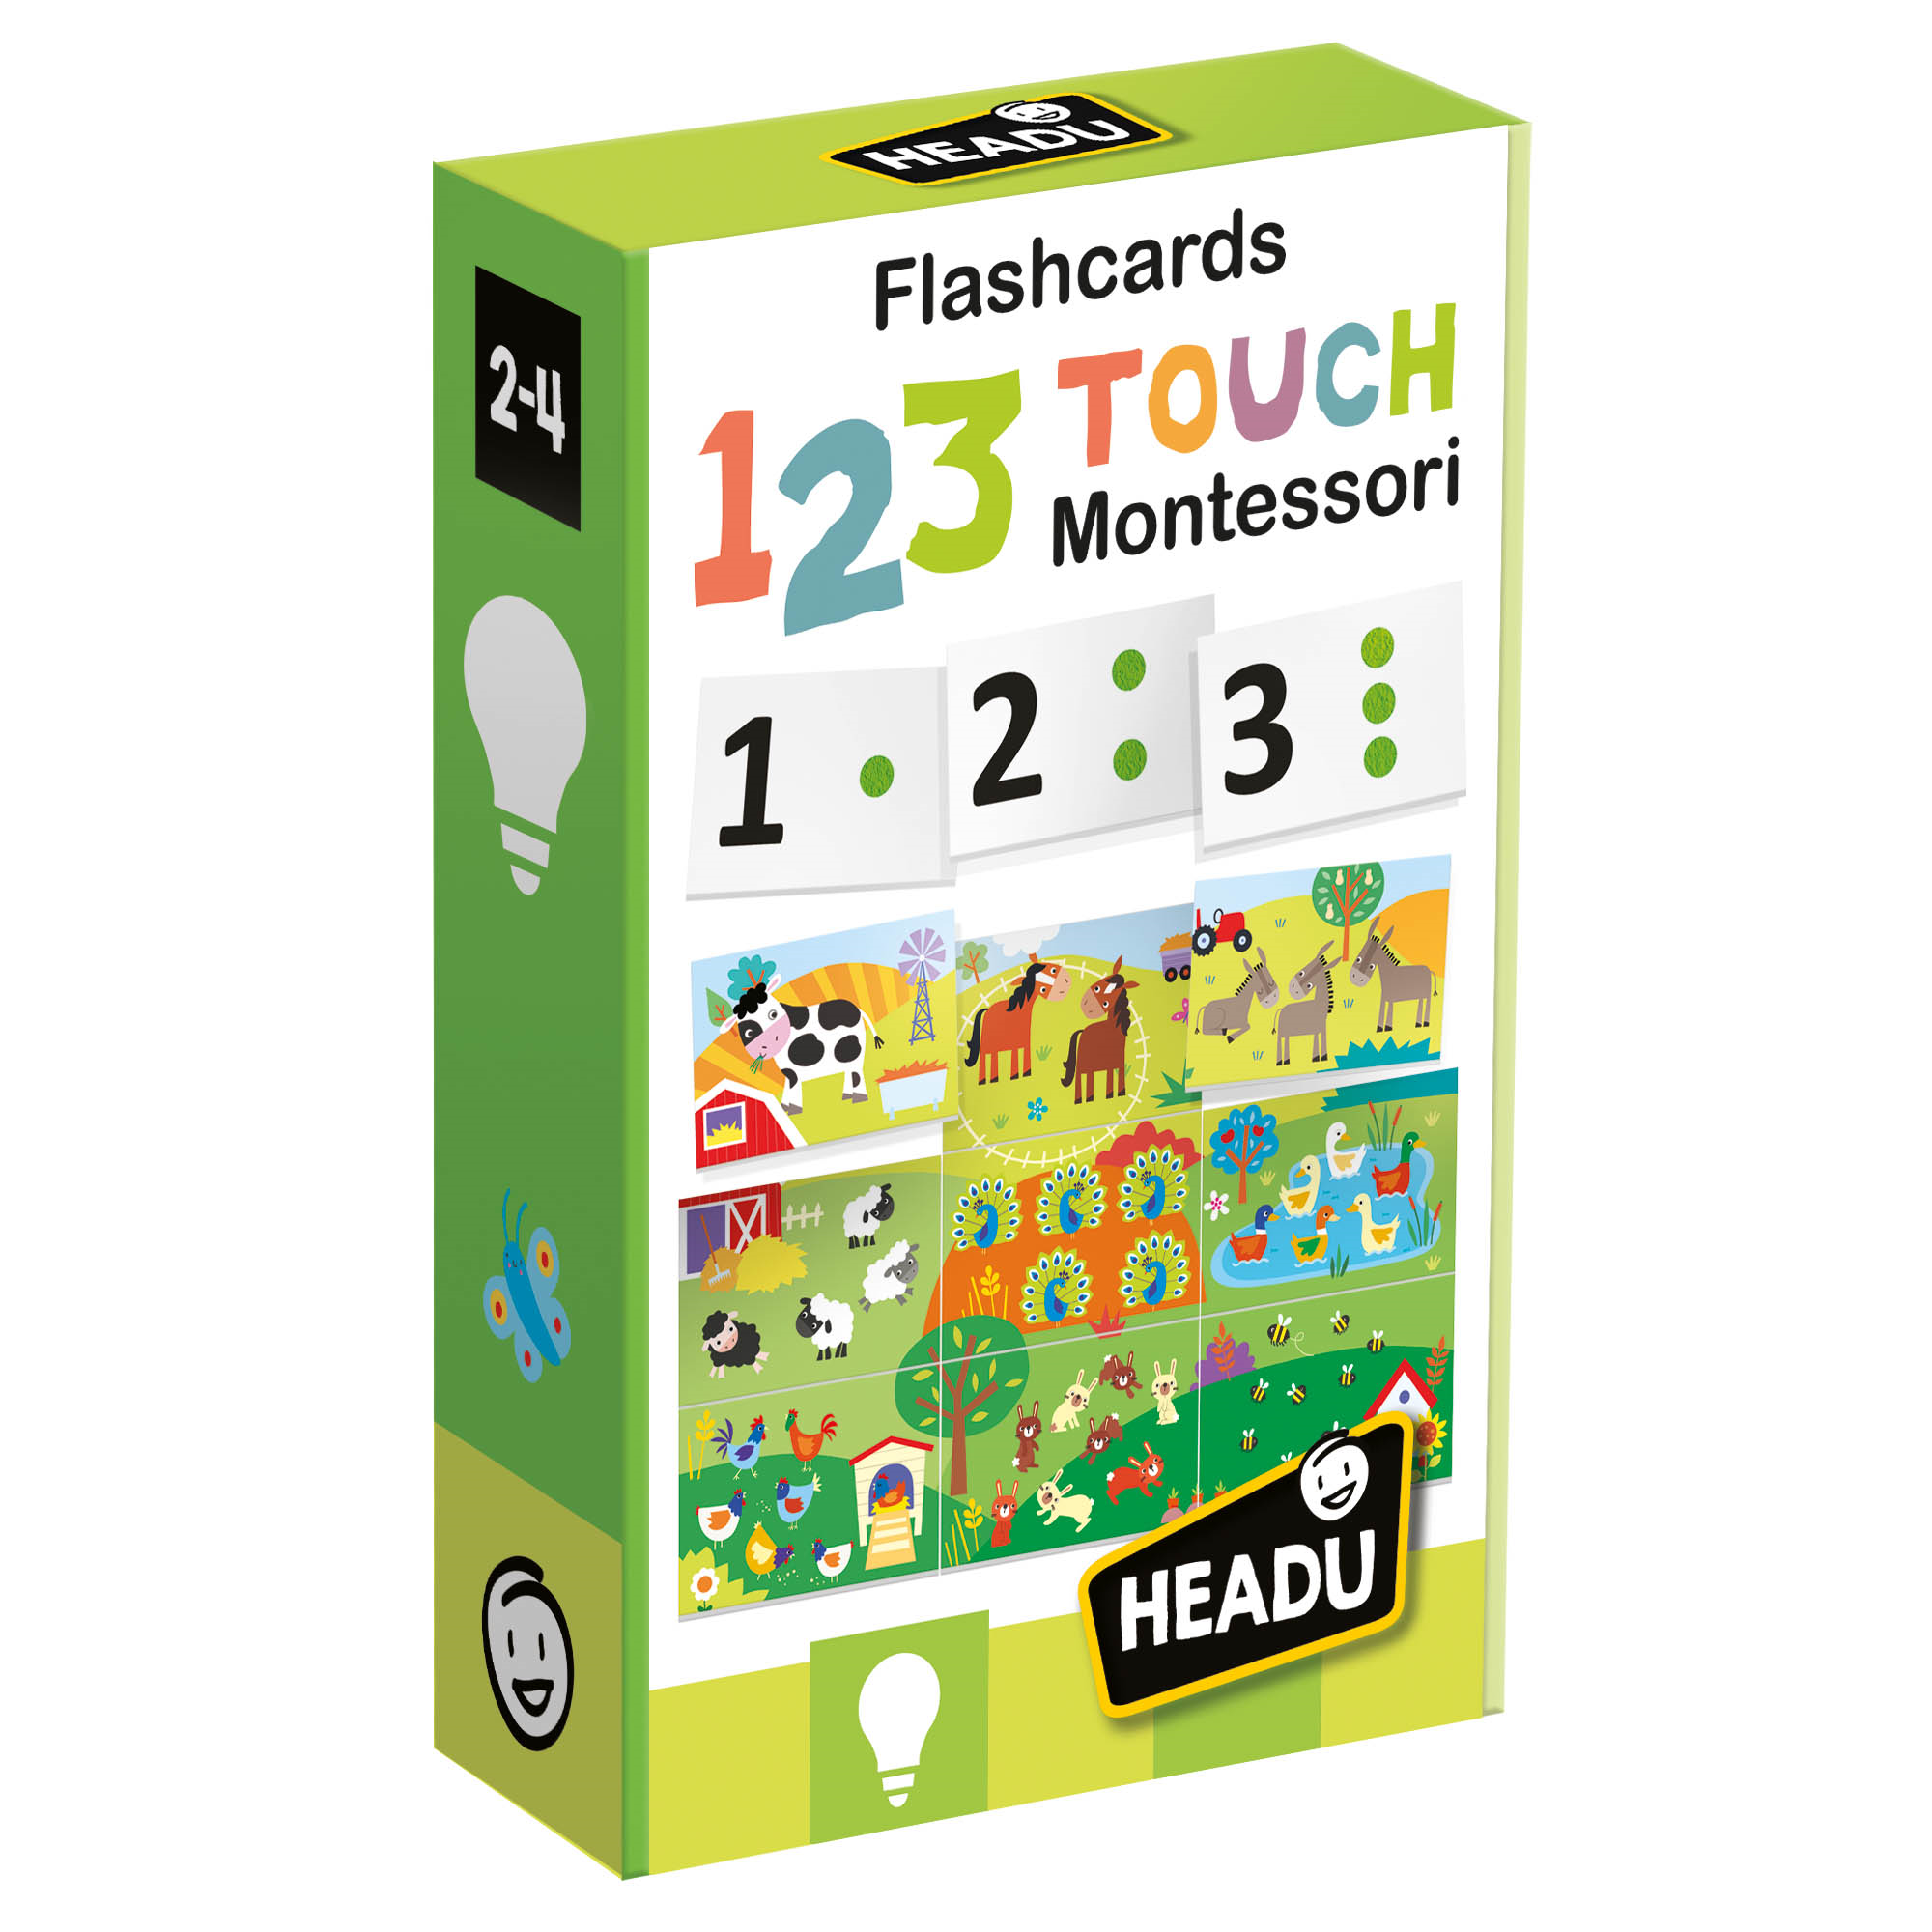 Flashcards 123 touch montessori.  tocca e impara. montessori. 2-4 anni - HEADU